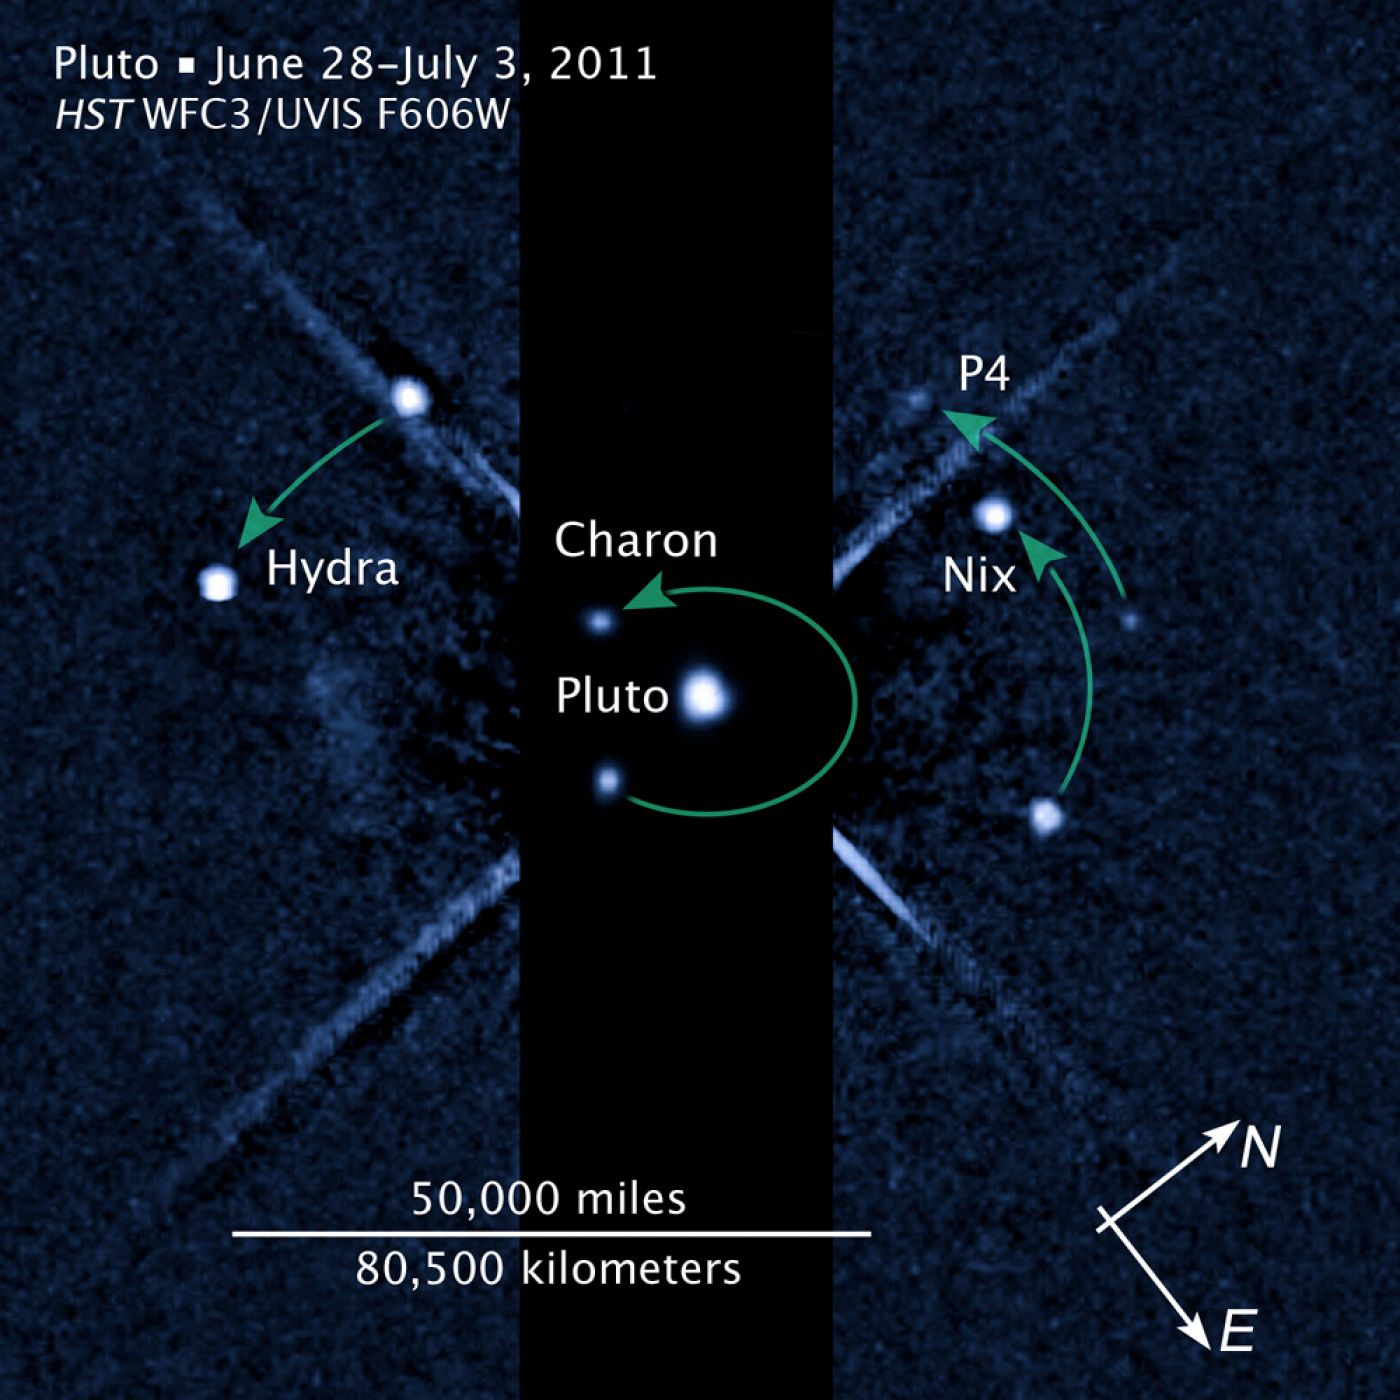 Imagen capturada por el Hubble donde se observa Plutón y sus satélites.